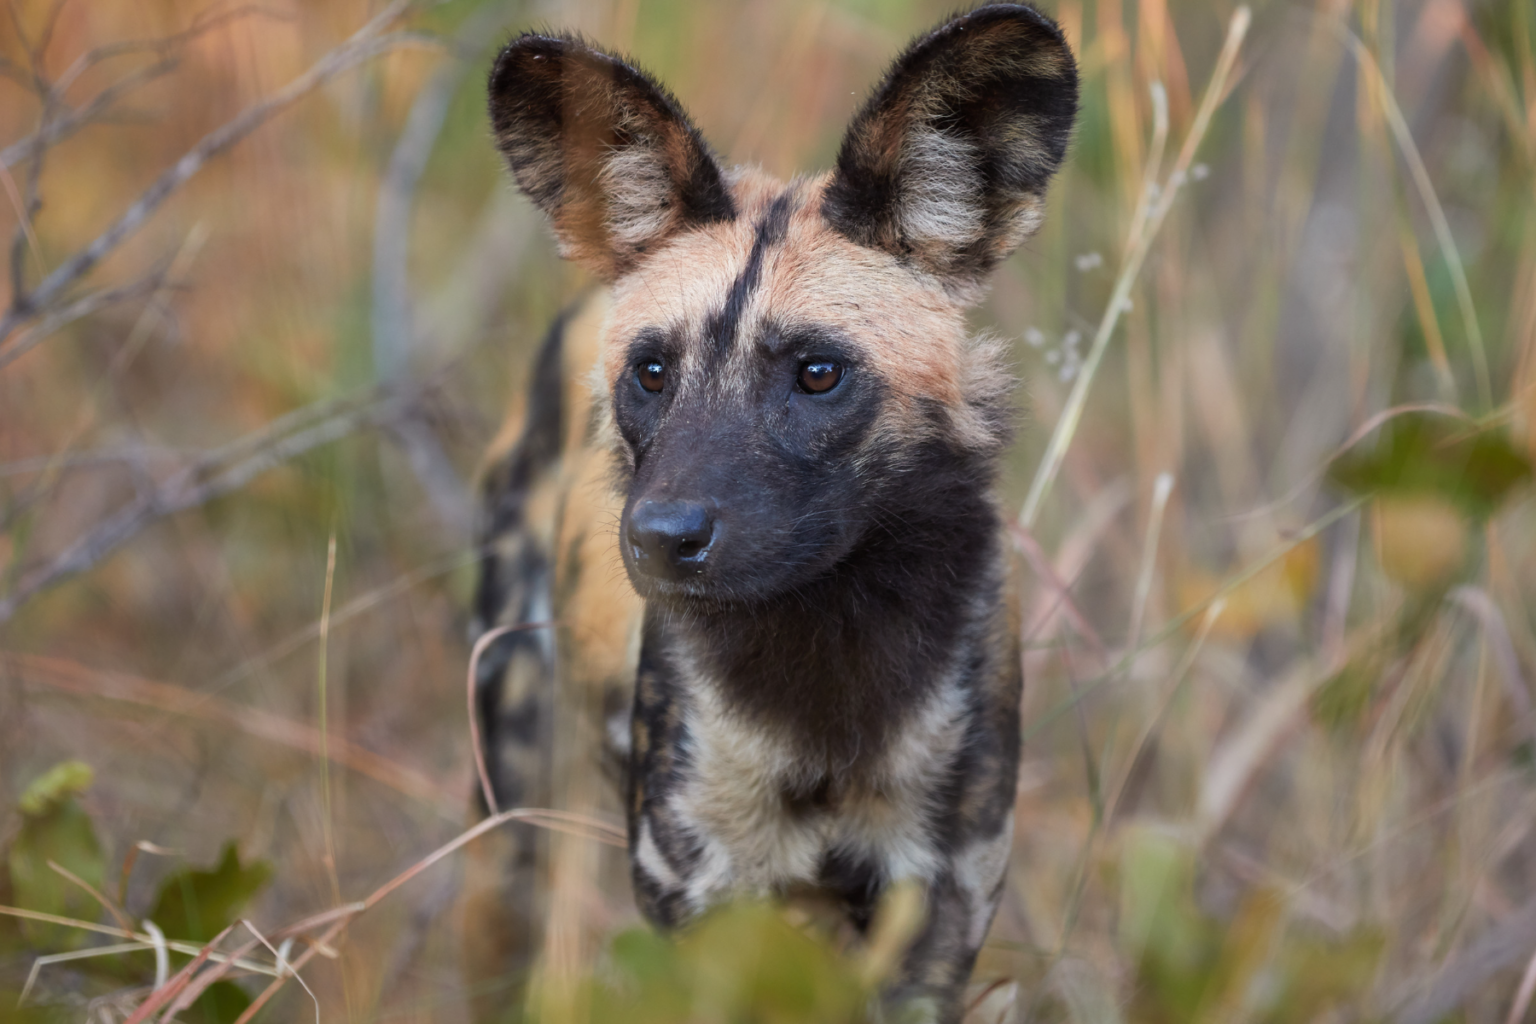 Zambia kafue national park wild dog wildlife